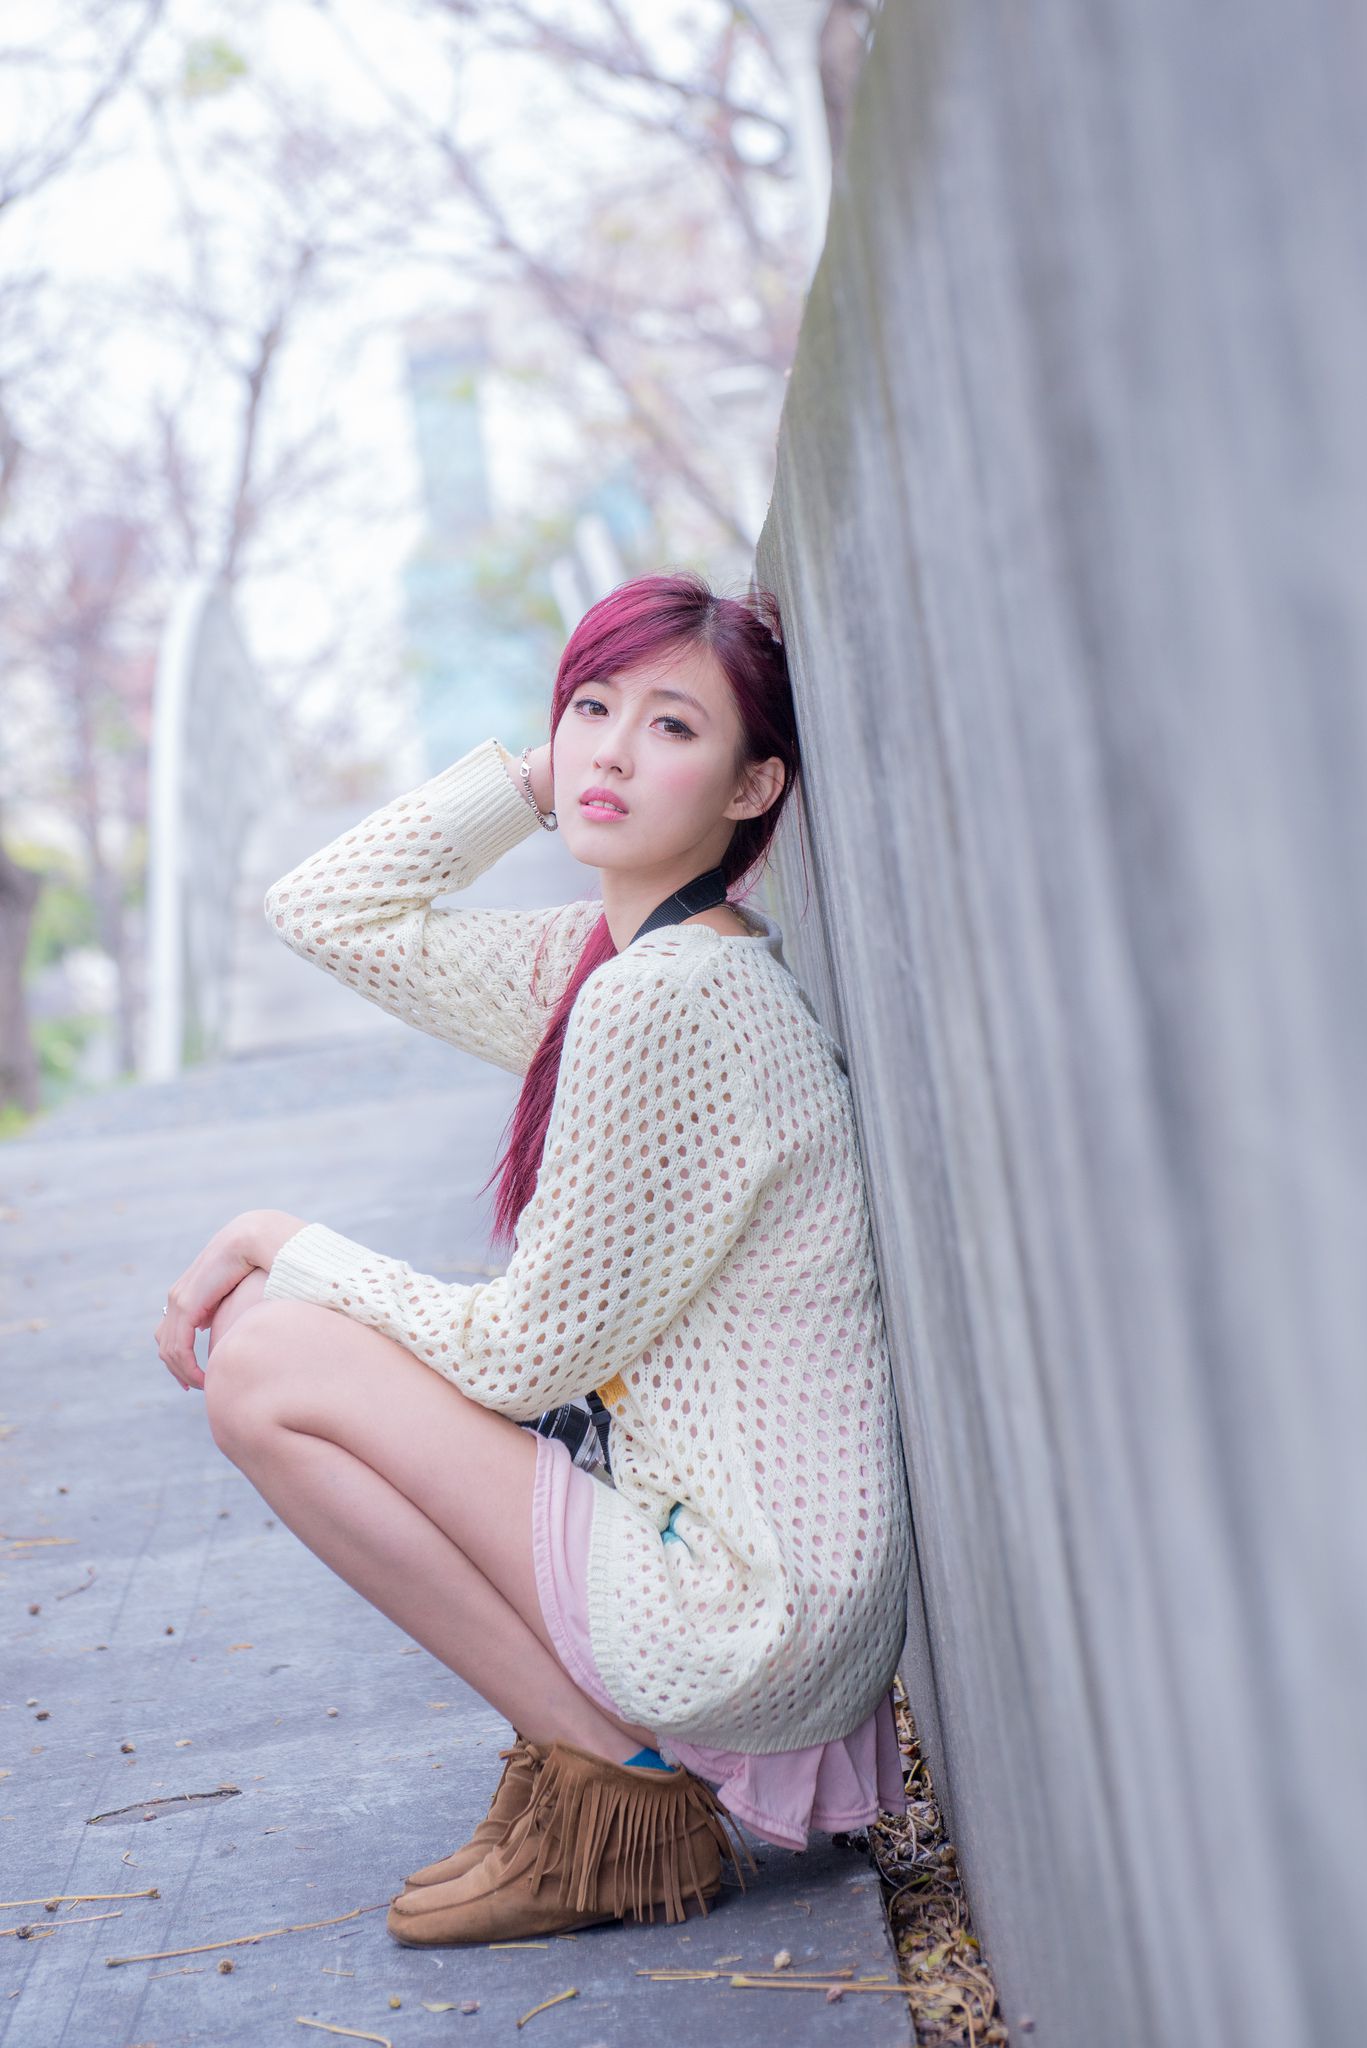 台湾美女廖挺伶 - 清新甜美的美女摄影师